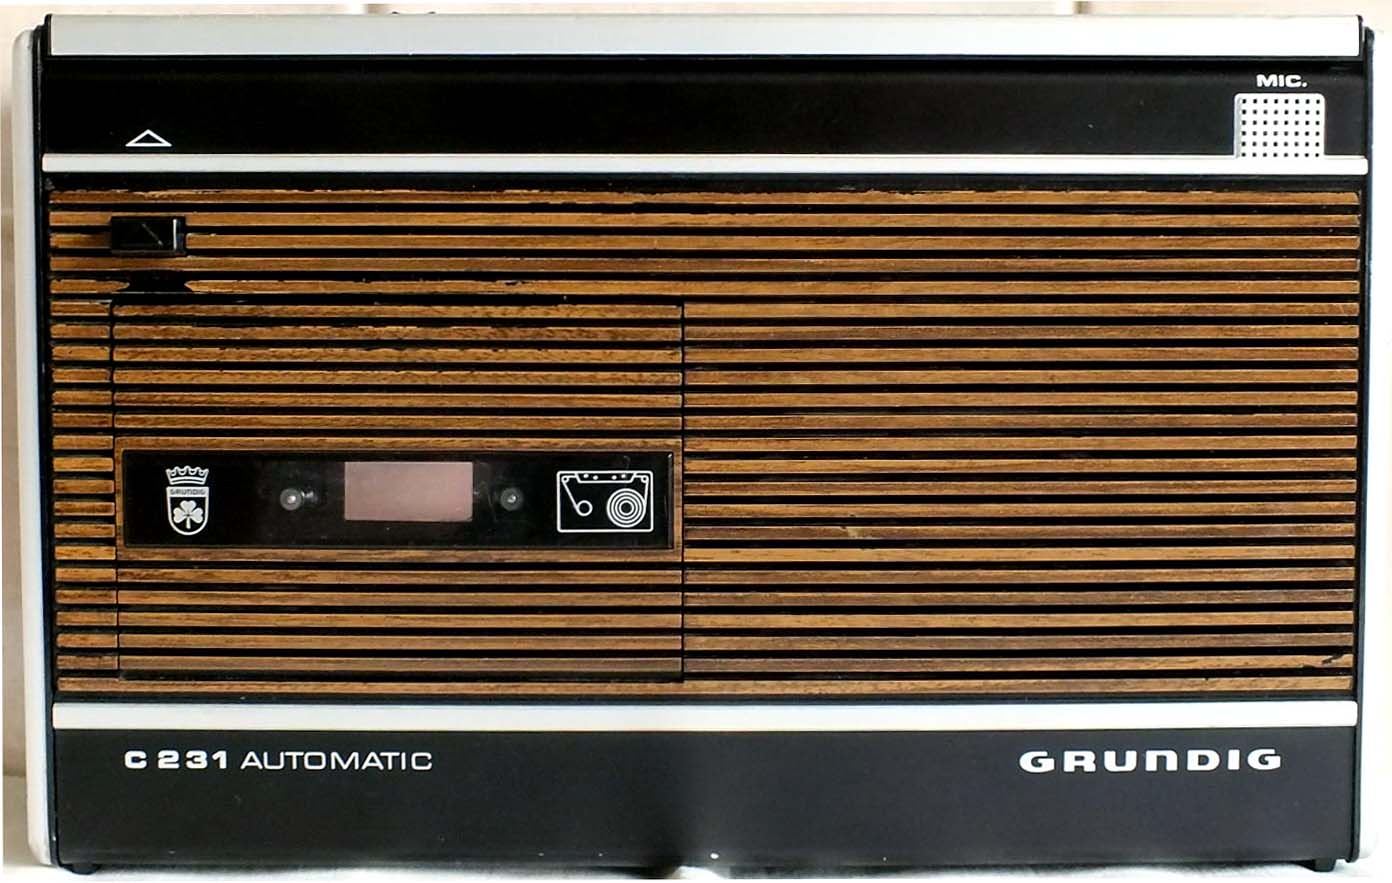 Ранний Grundig моно-магнитофон ранний дизайн параллельные как бы деревянные рейки